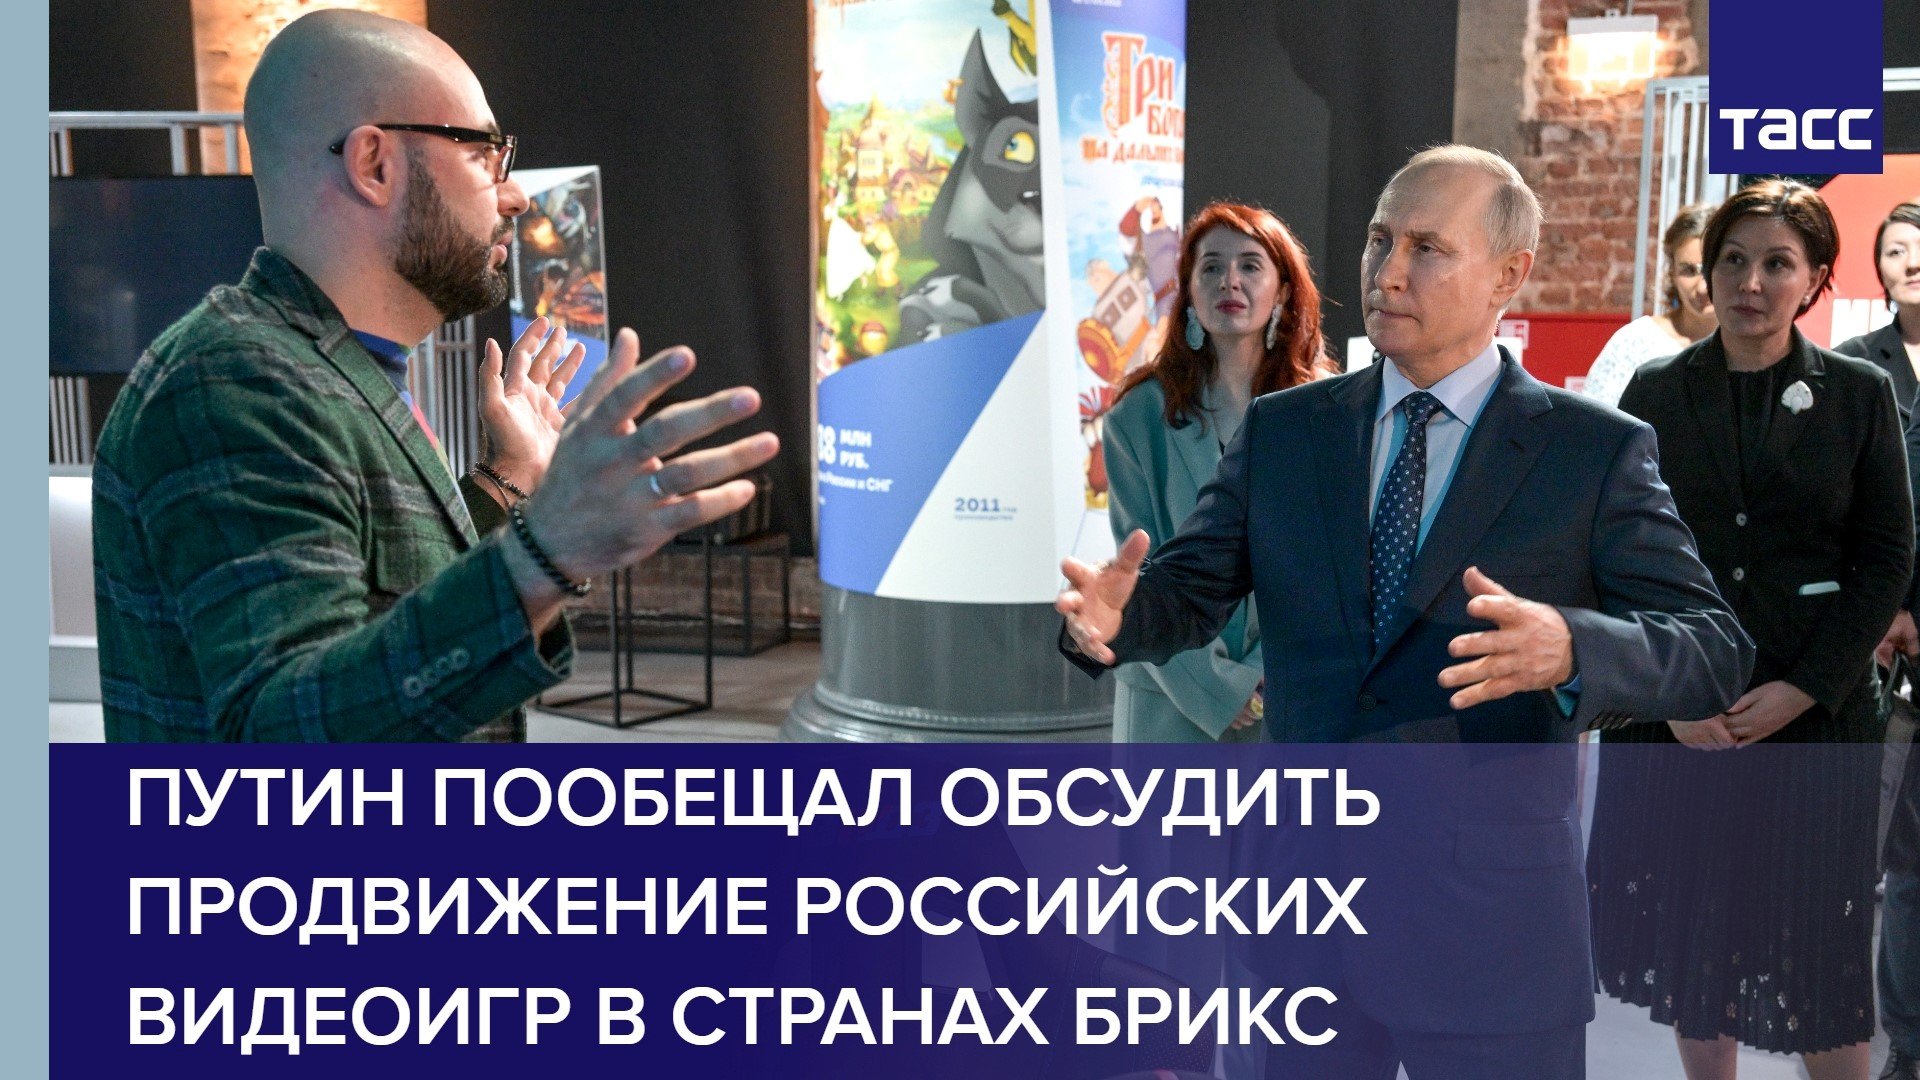 Путин пообещал обсудить продвижение российских видеоигр в странах БРИКС #shorts